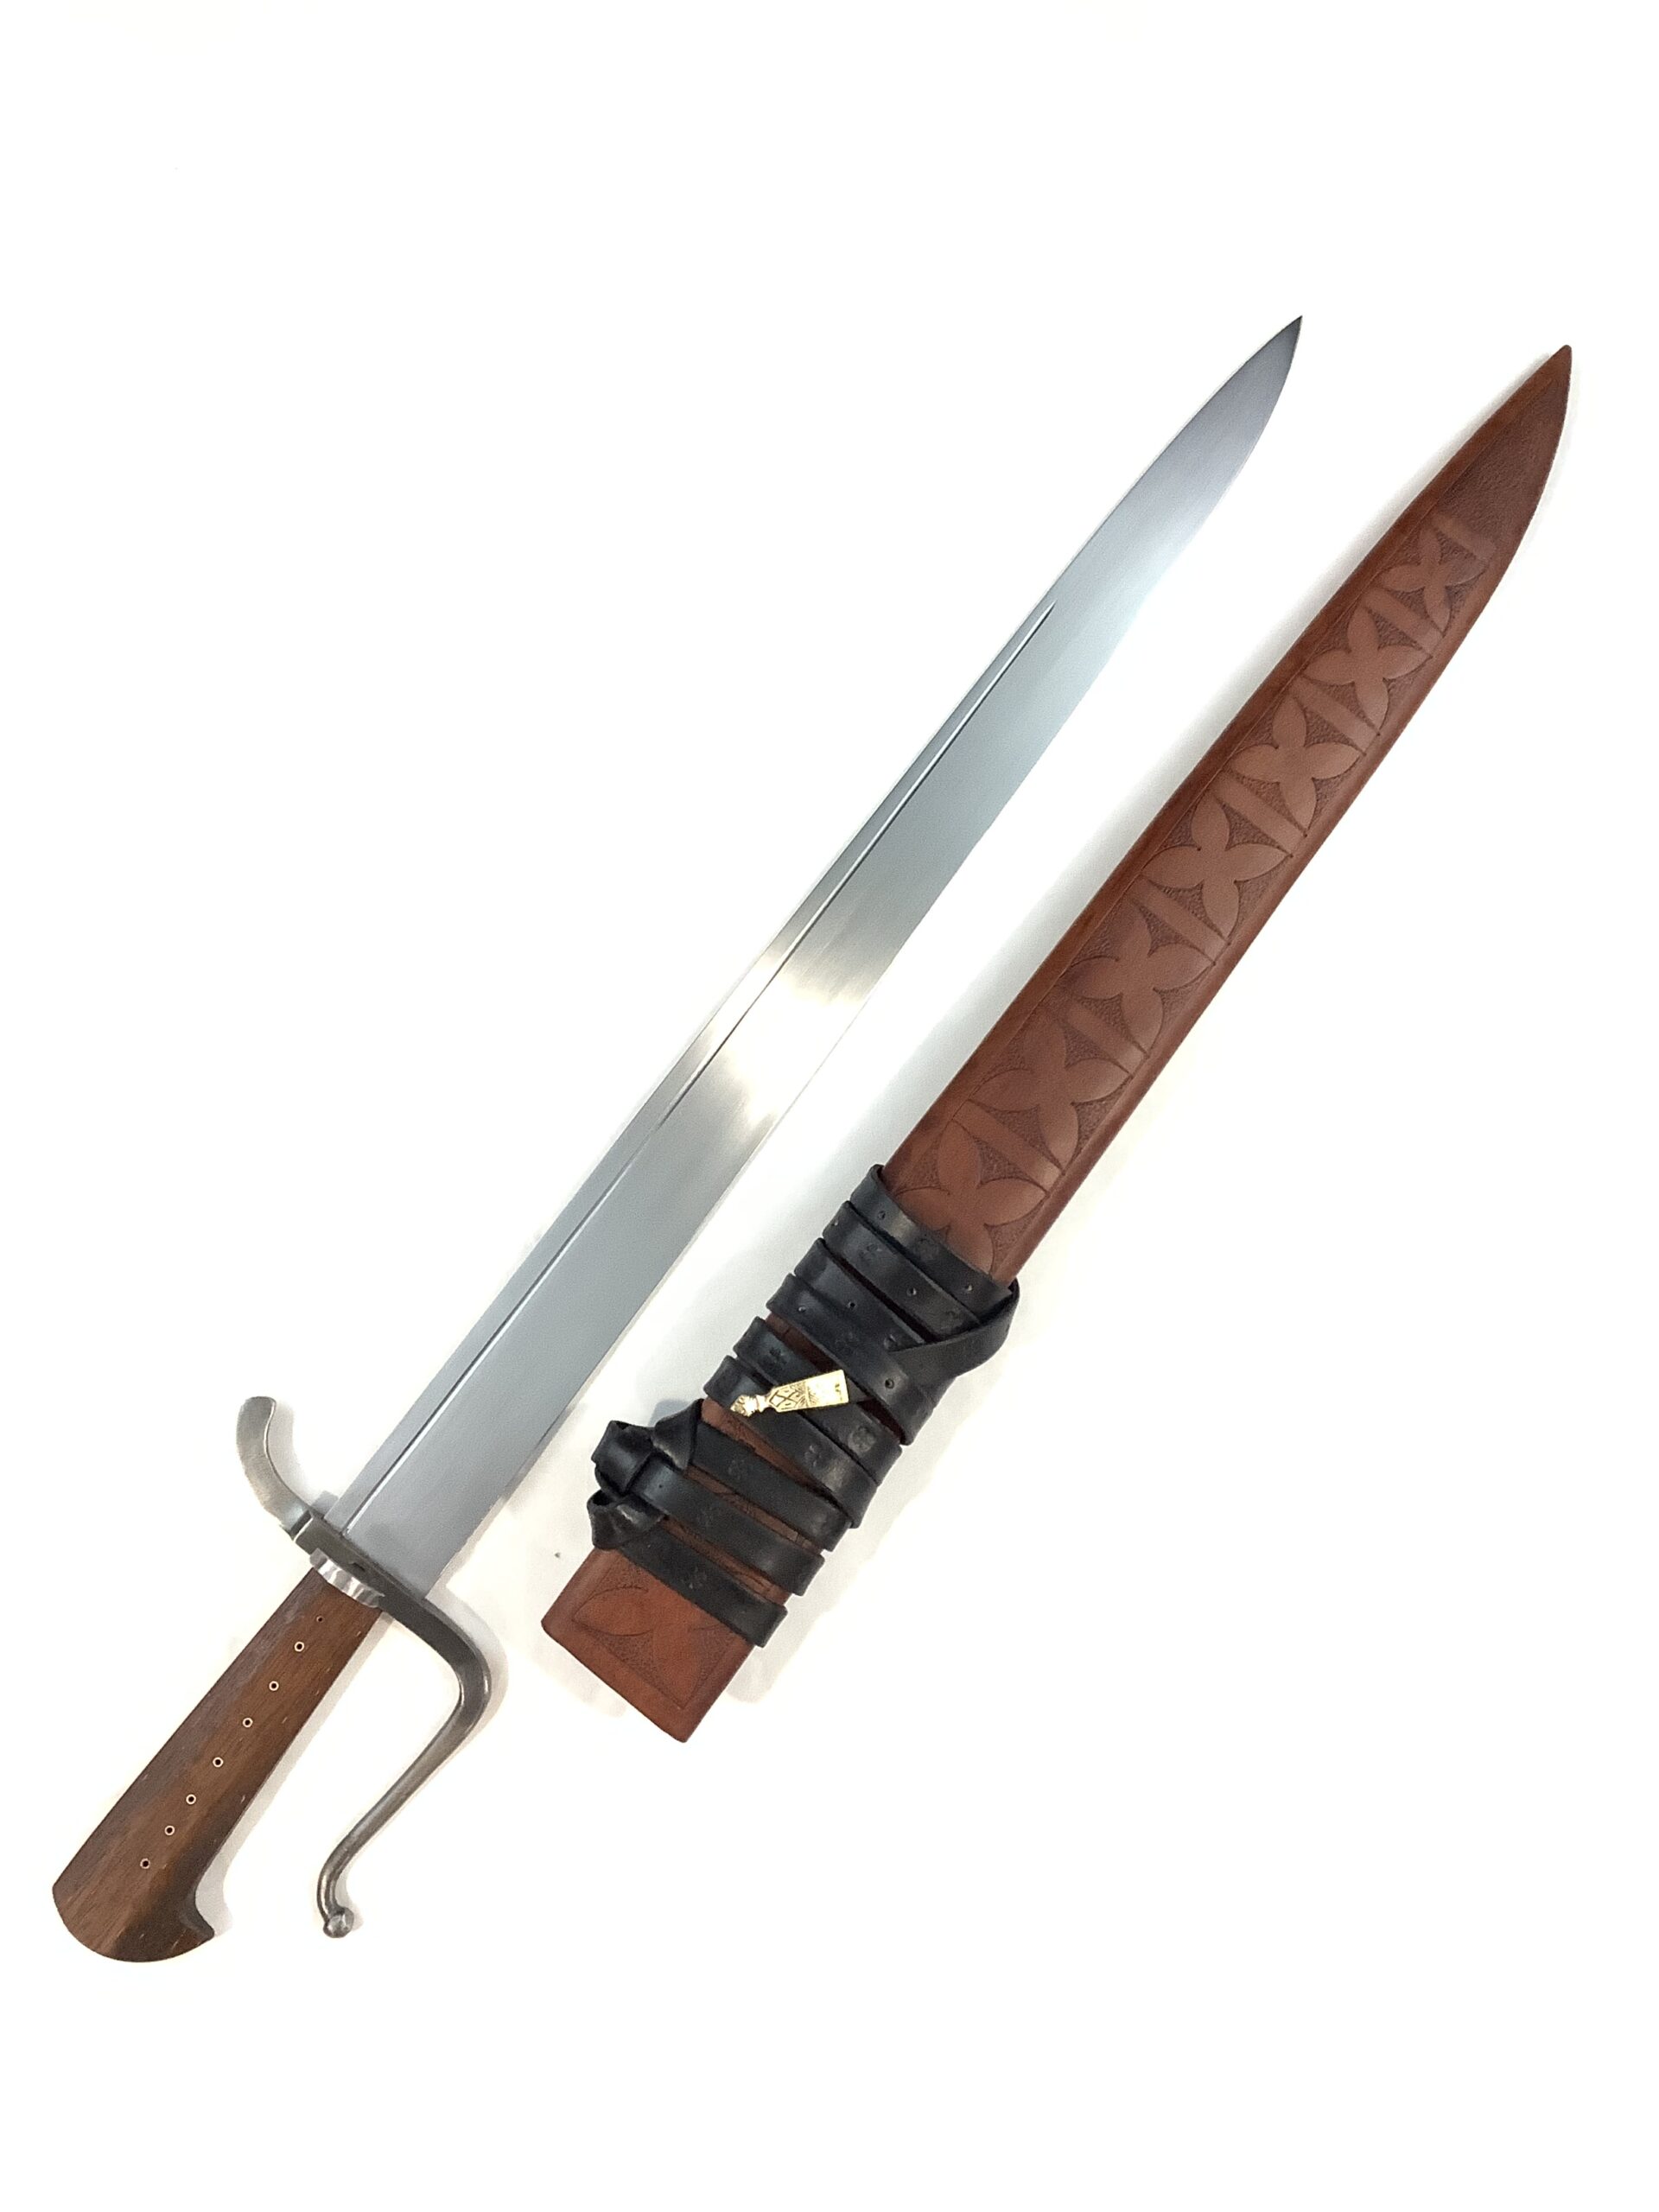 KH Rauber Messer, Sharp, Brown Scabbard, Black Belt (3)